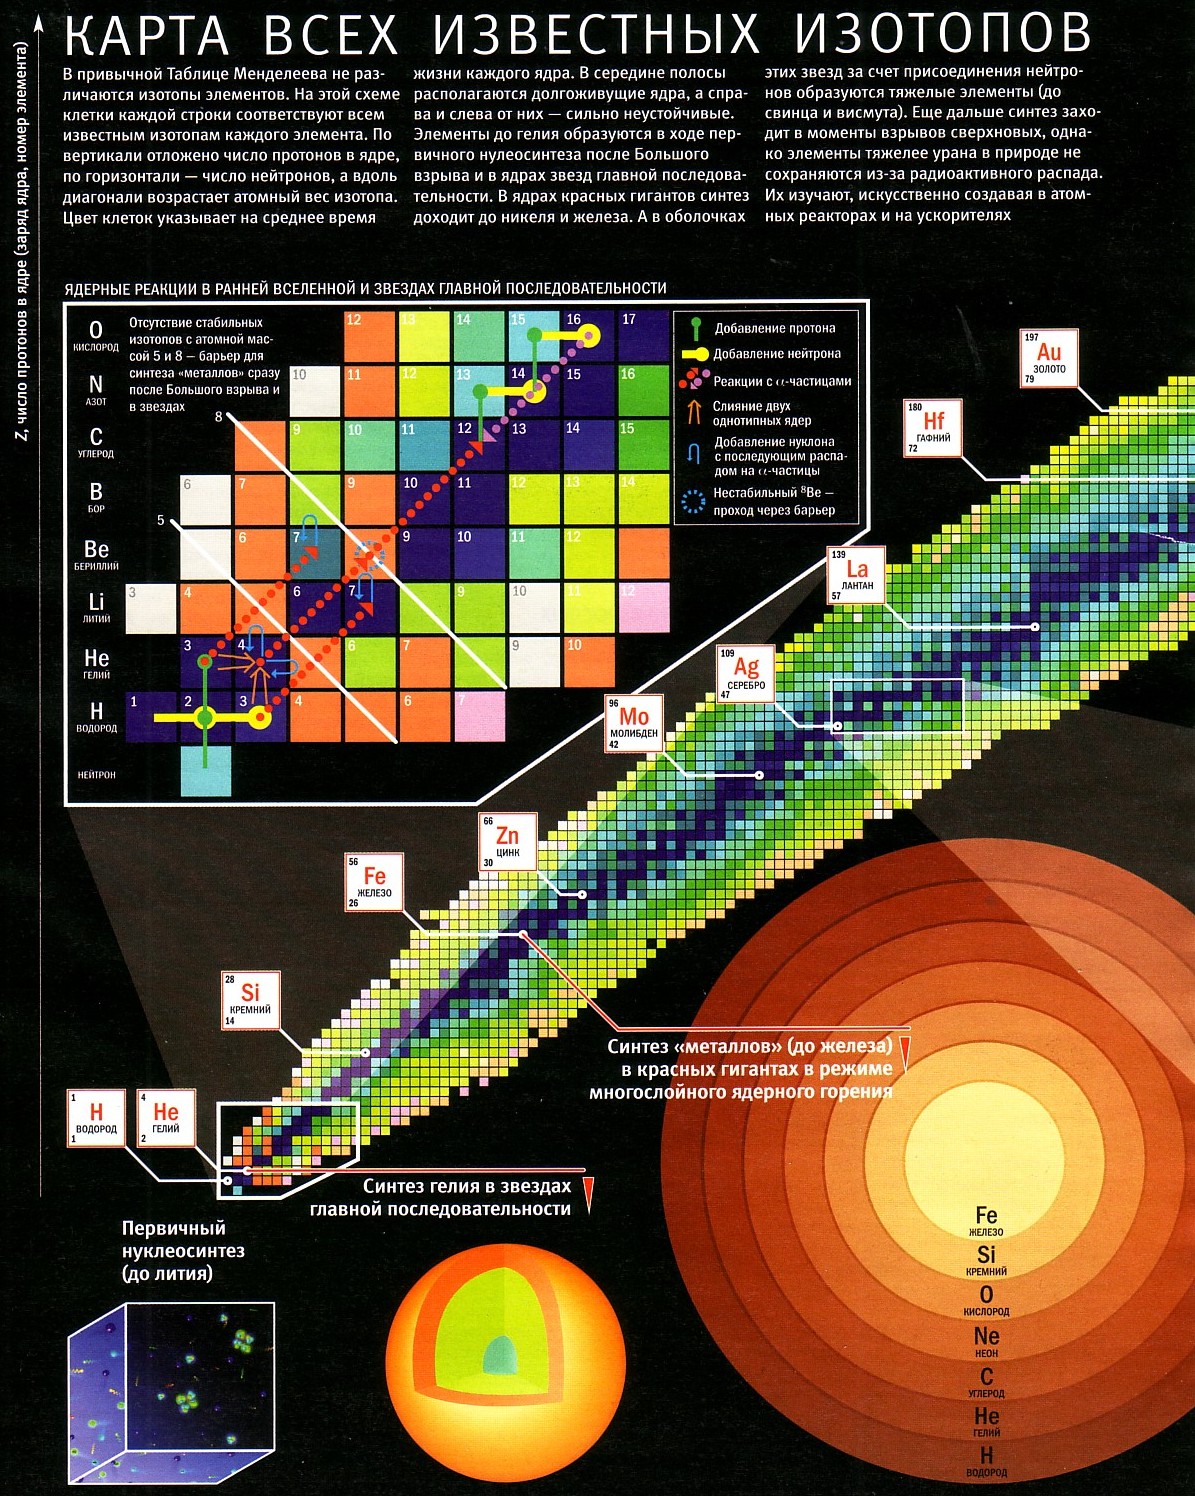 Карта продуктов звездных ядерных реакций